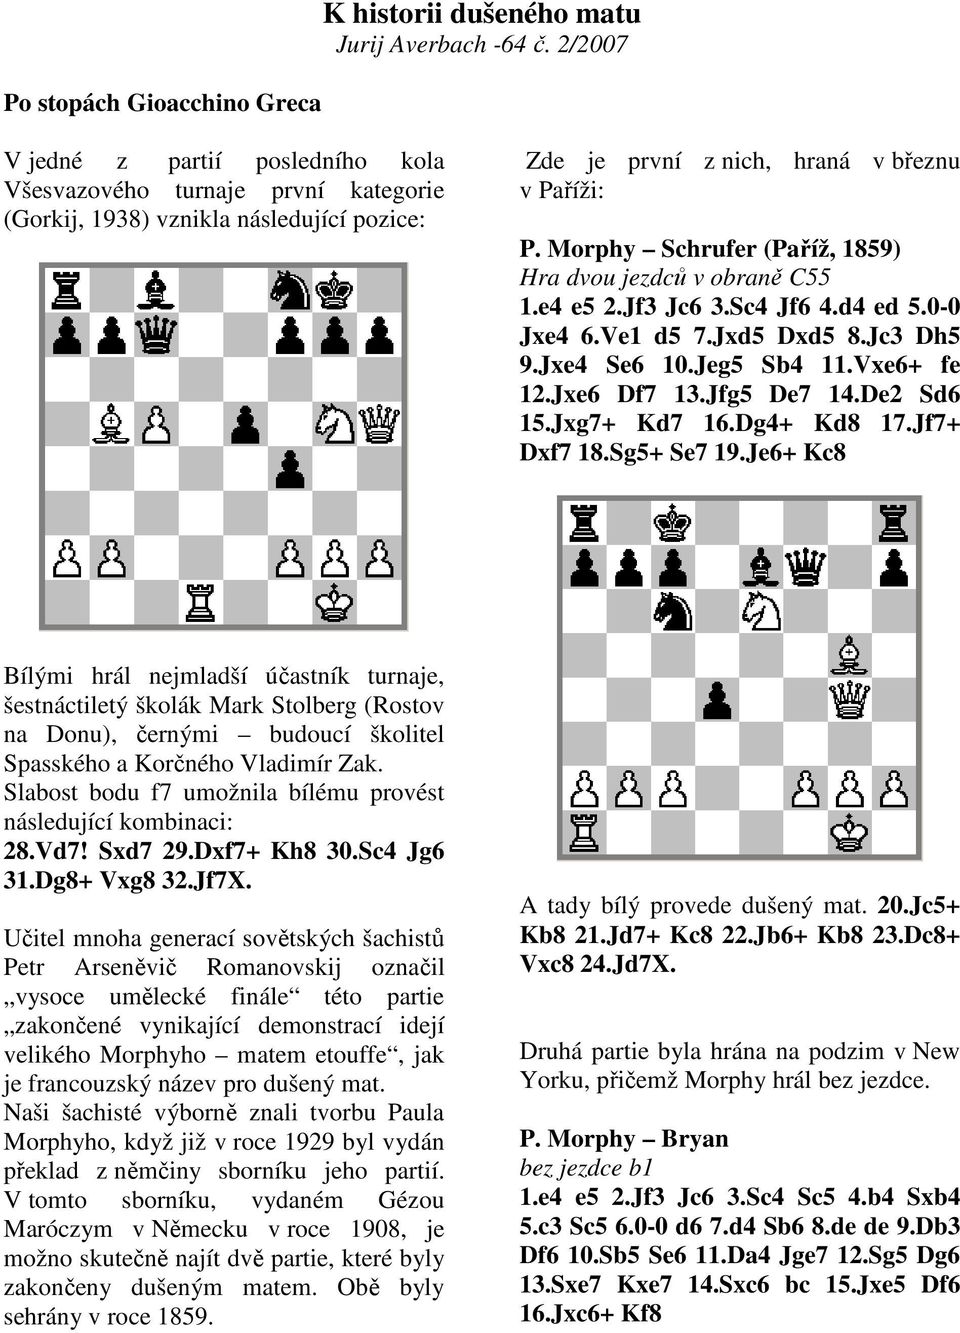 Morphy Schrufer (Paříž, 1859) Hra dvou jezdců v obraně C55 1.e4 e5 2.Jf3 Jc6 3.Sc4 Jf6 4.d4 ed 5.0-0 Jxe4 6.Ve1 d5 7.Jxd5 Dxd5 8.Jc3 Dh5 9.Jxe4 Se6 10.Jeg5 Sb4 11.Vxe6+ fe 12.Jxe6 Df7 13.Jfg5 De7 14.